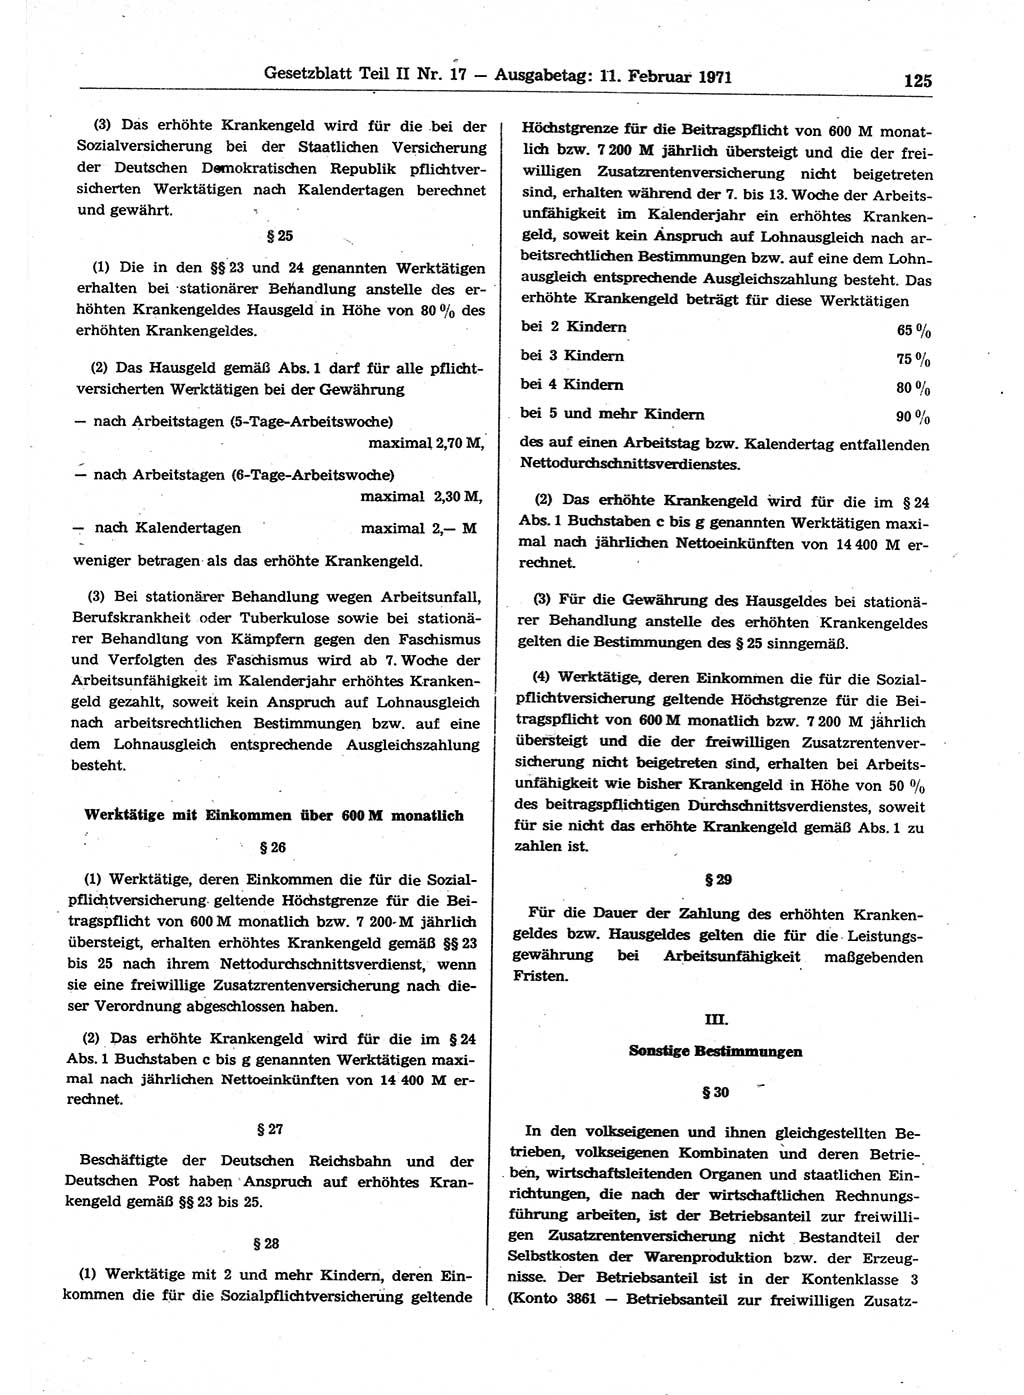 Gesetzblatt (GBl.) der Deutschen Demokratischen Republik (DDR) Teil ⅠⅠ 1971, Seite 125 (GBl. DDR ⅠⅠ 1971, S. 125)